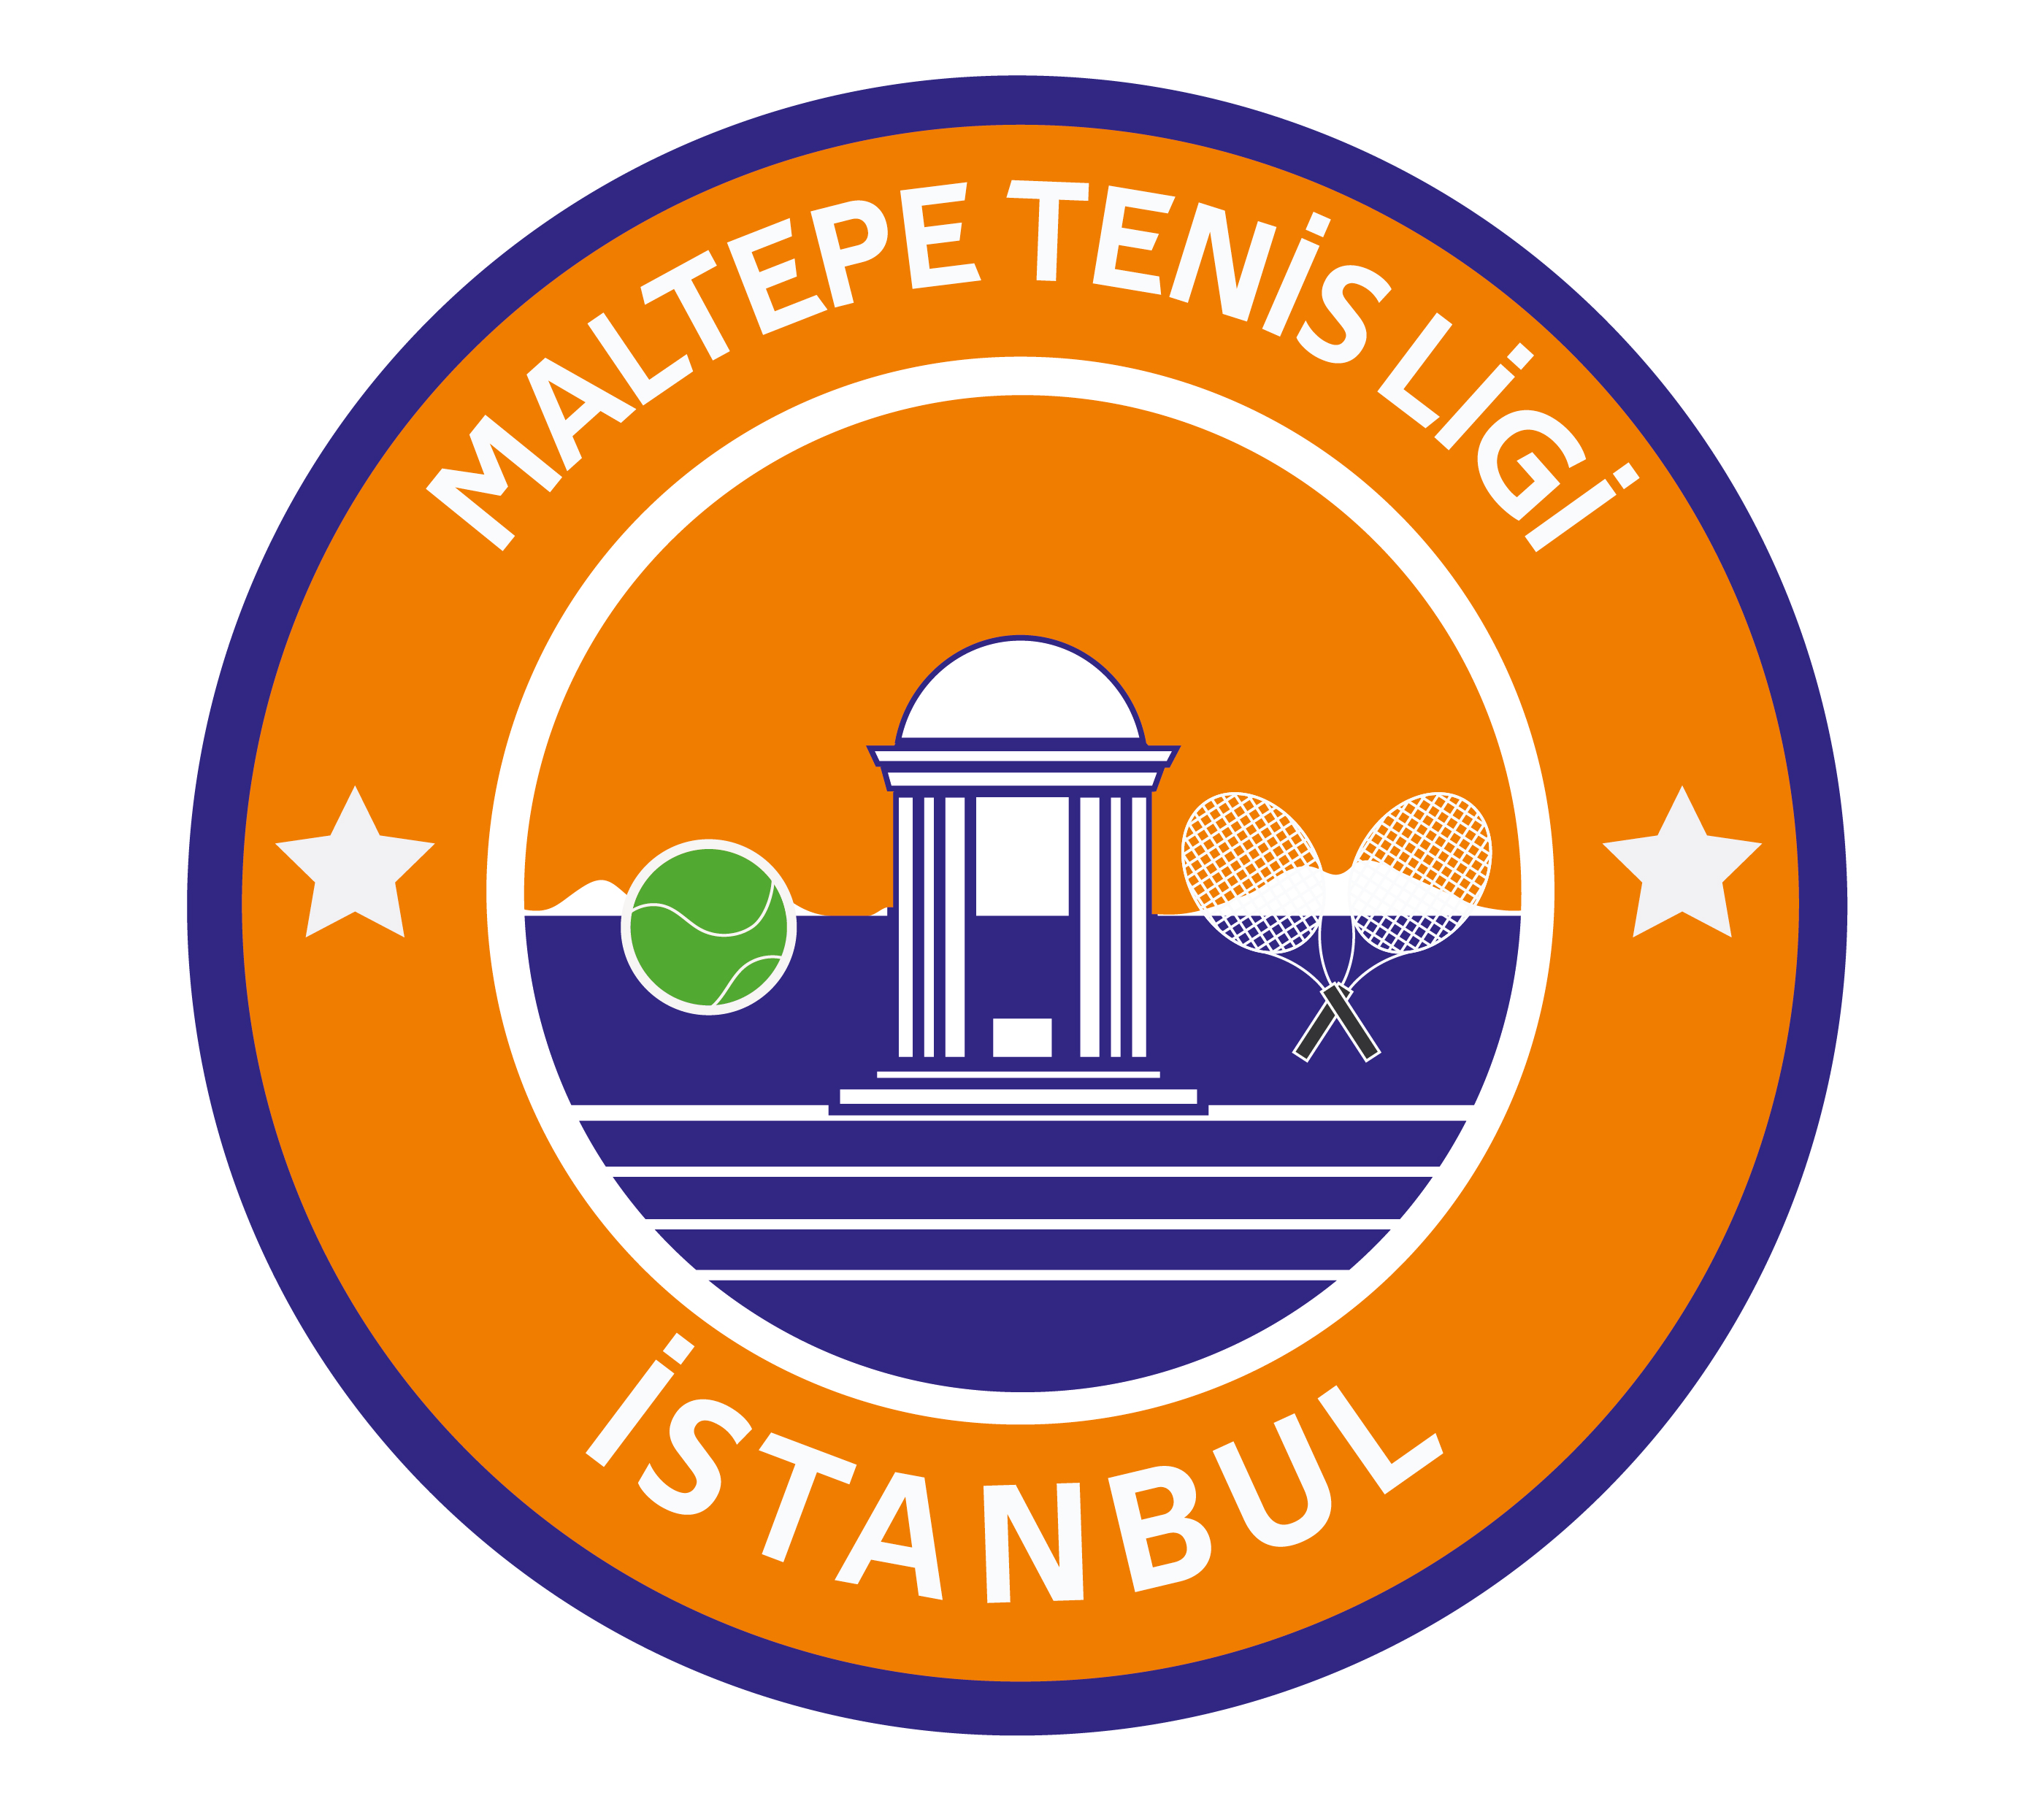 Maltepe Tenis Kulübü